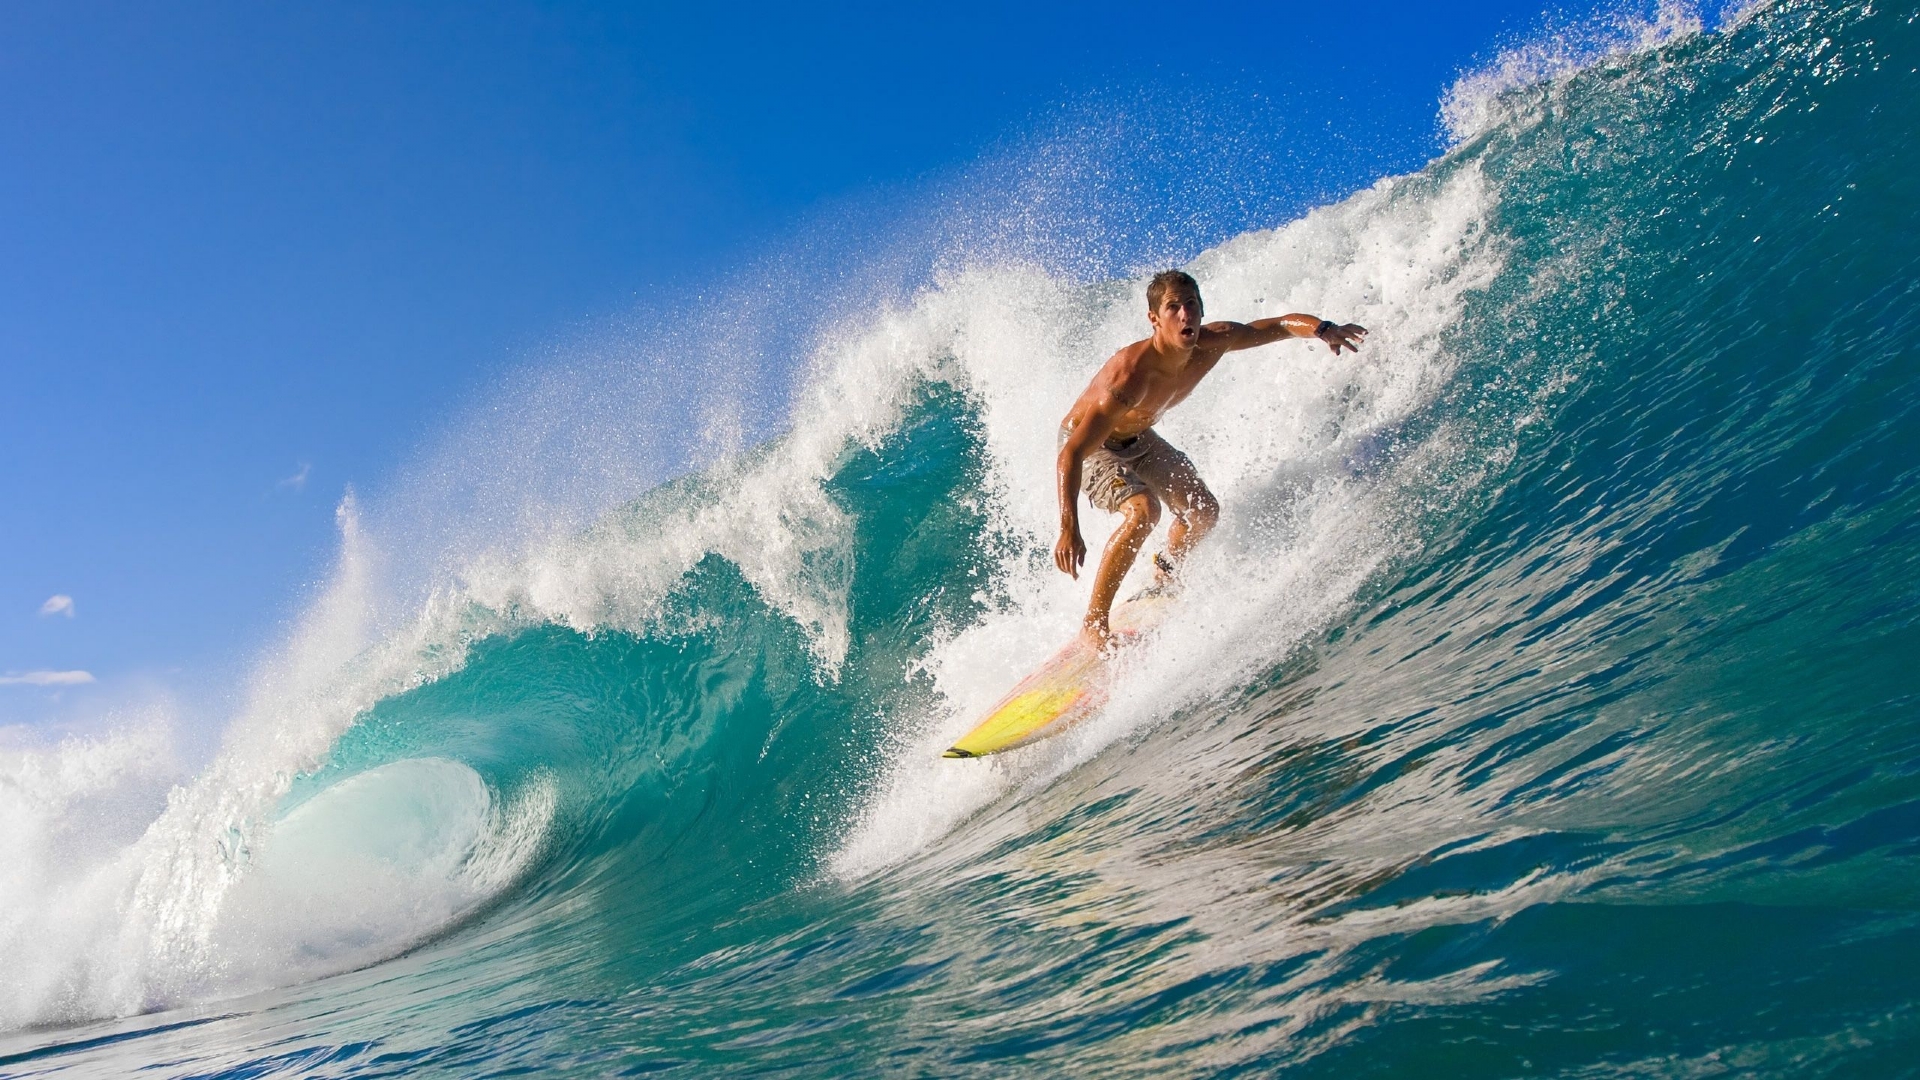 Summer Surf 1080p HD Wallpaper Source